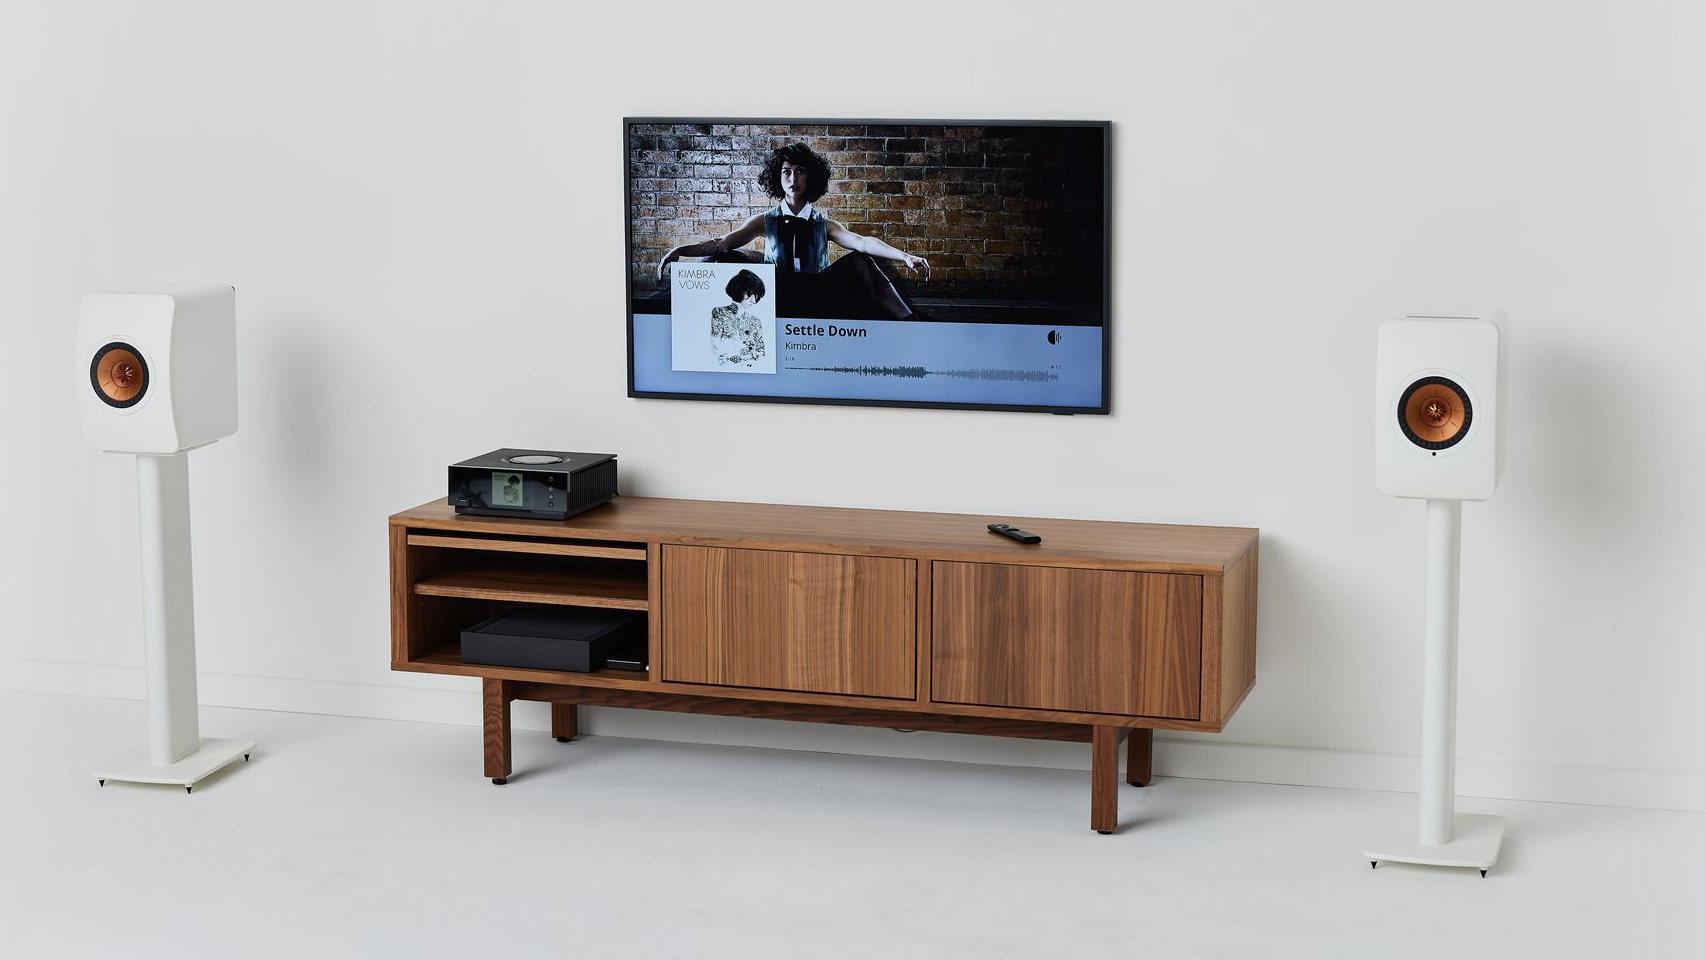 Roon permite montar un servidor de música en casa conectado a todos nuestros dispositivos